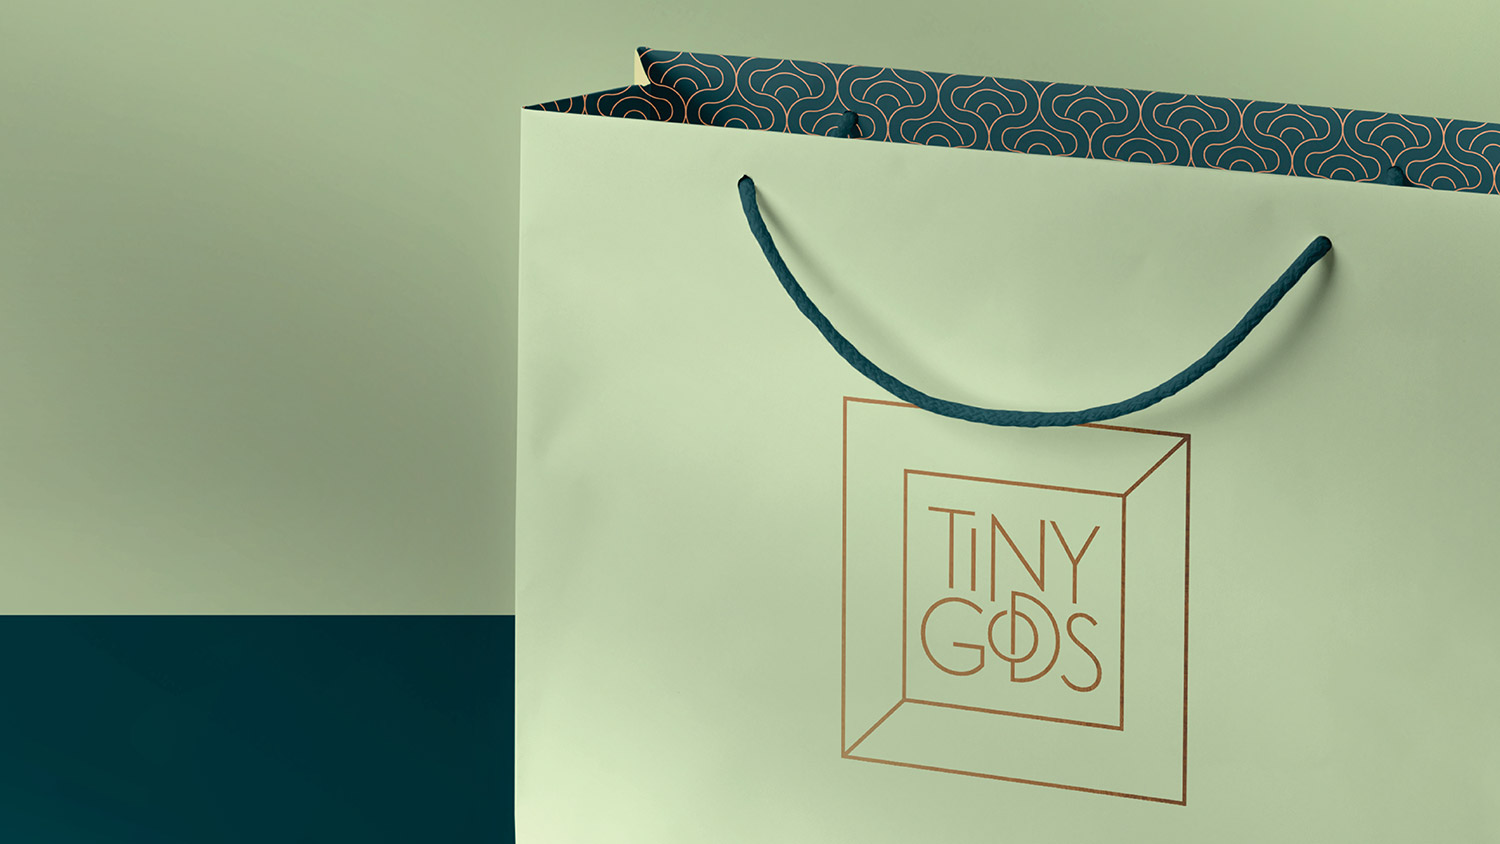 Tiny Gods珠宝品牌视觉形象设计